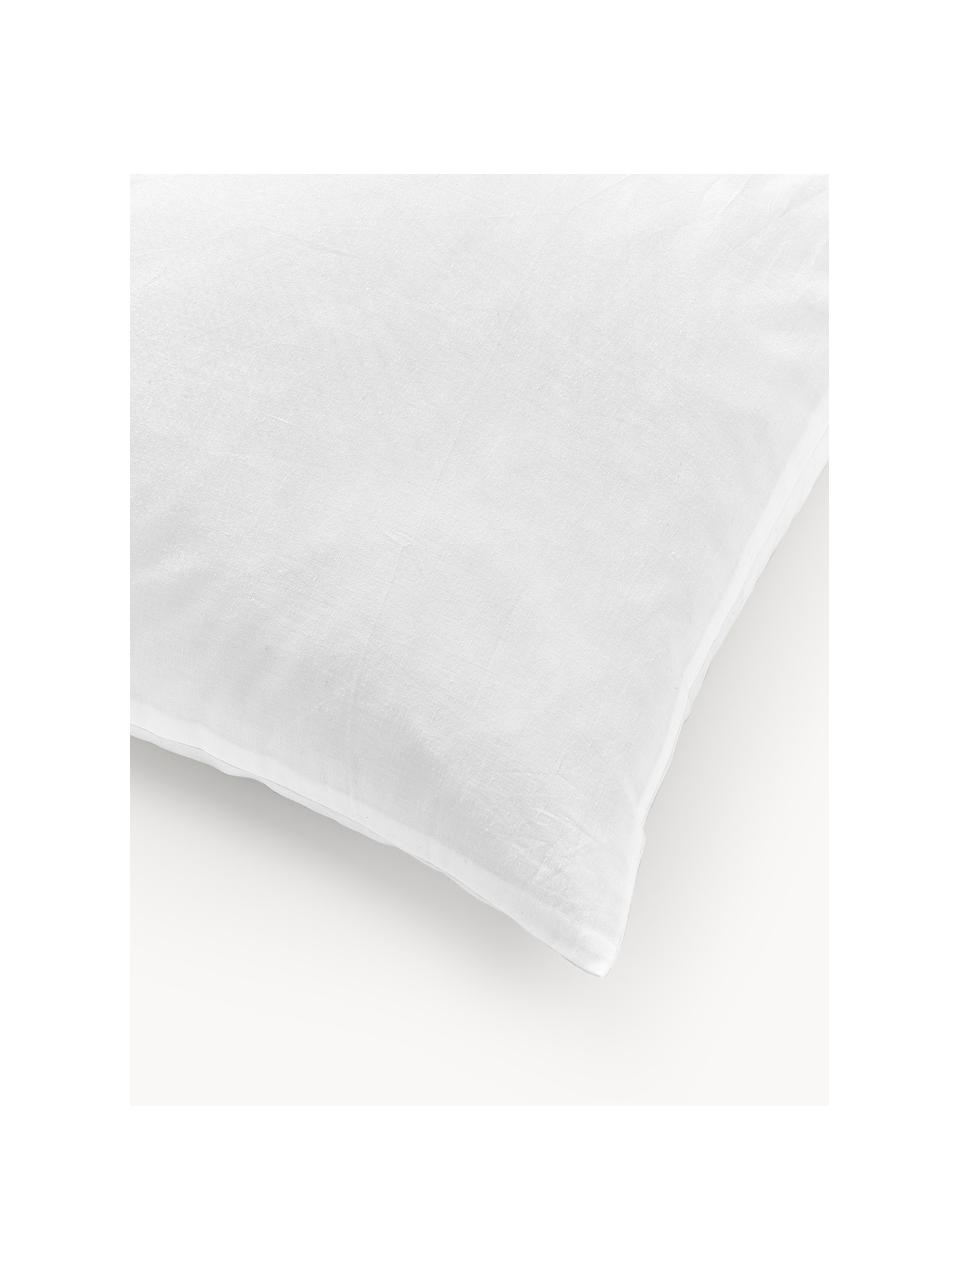 Federa in cotone percalle con motivo fiocco di neve trapuntato Vidal, Bianco, Larg. 50 x Lung. 80 cm